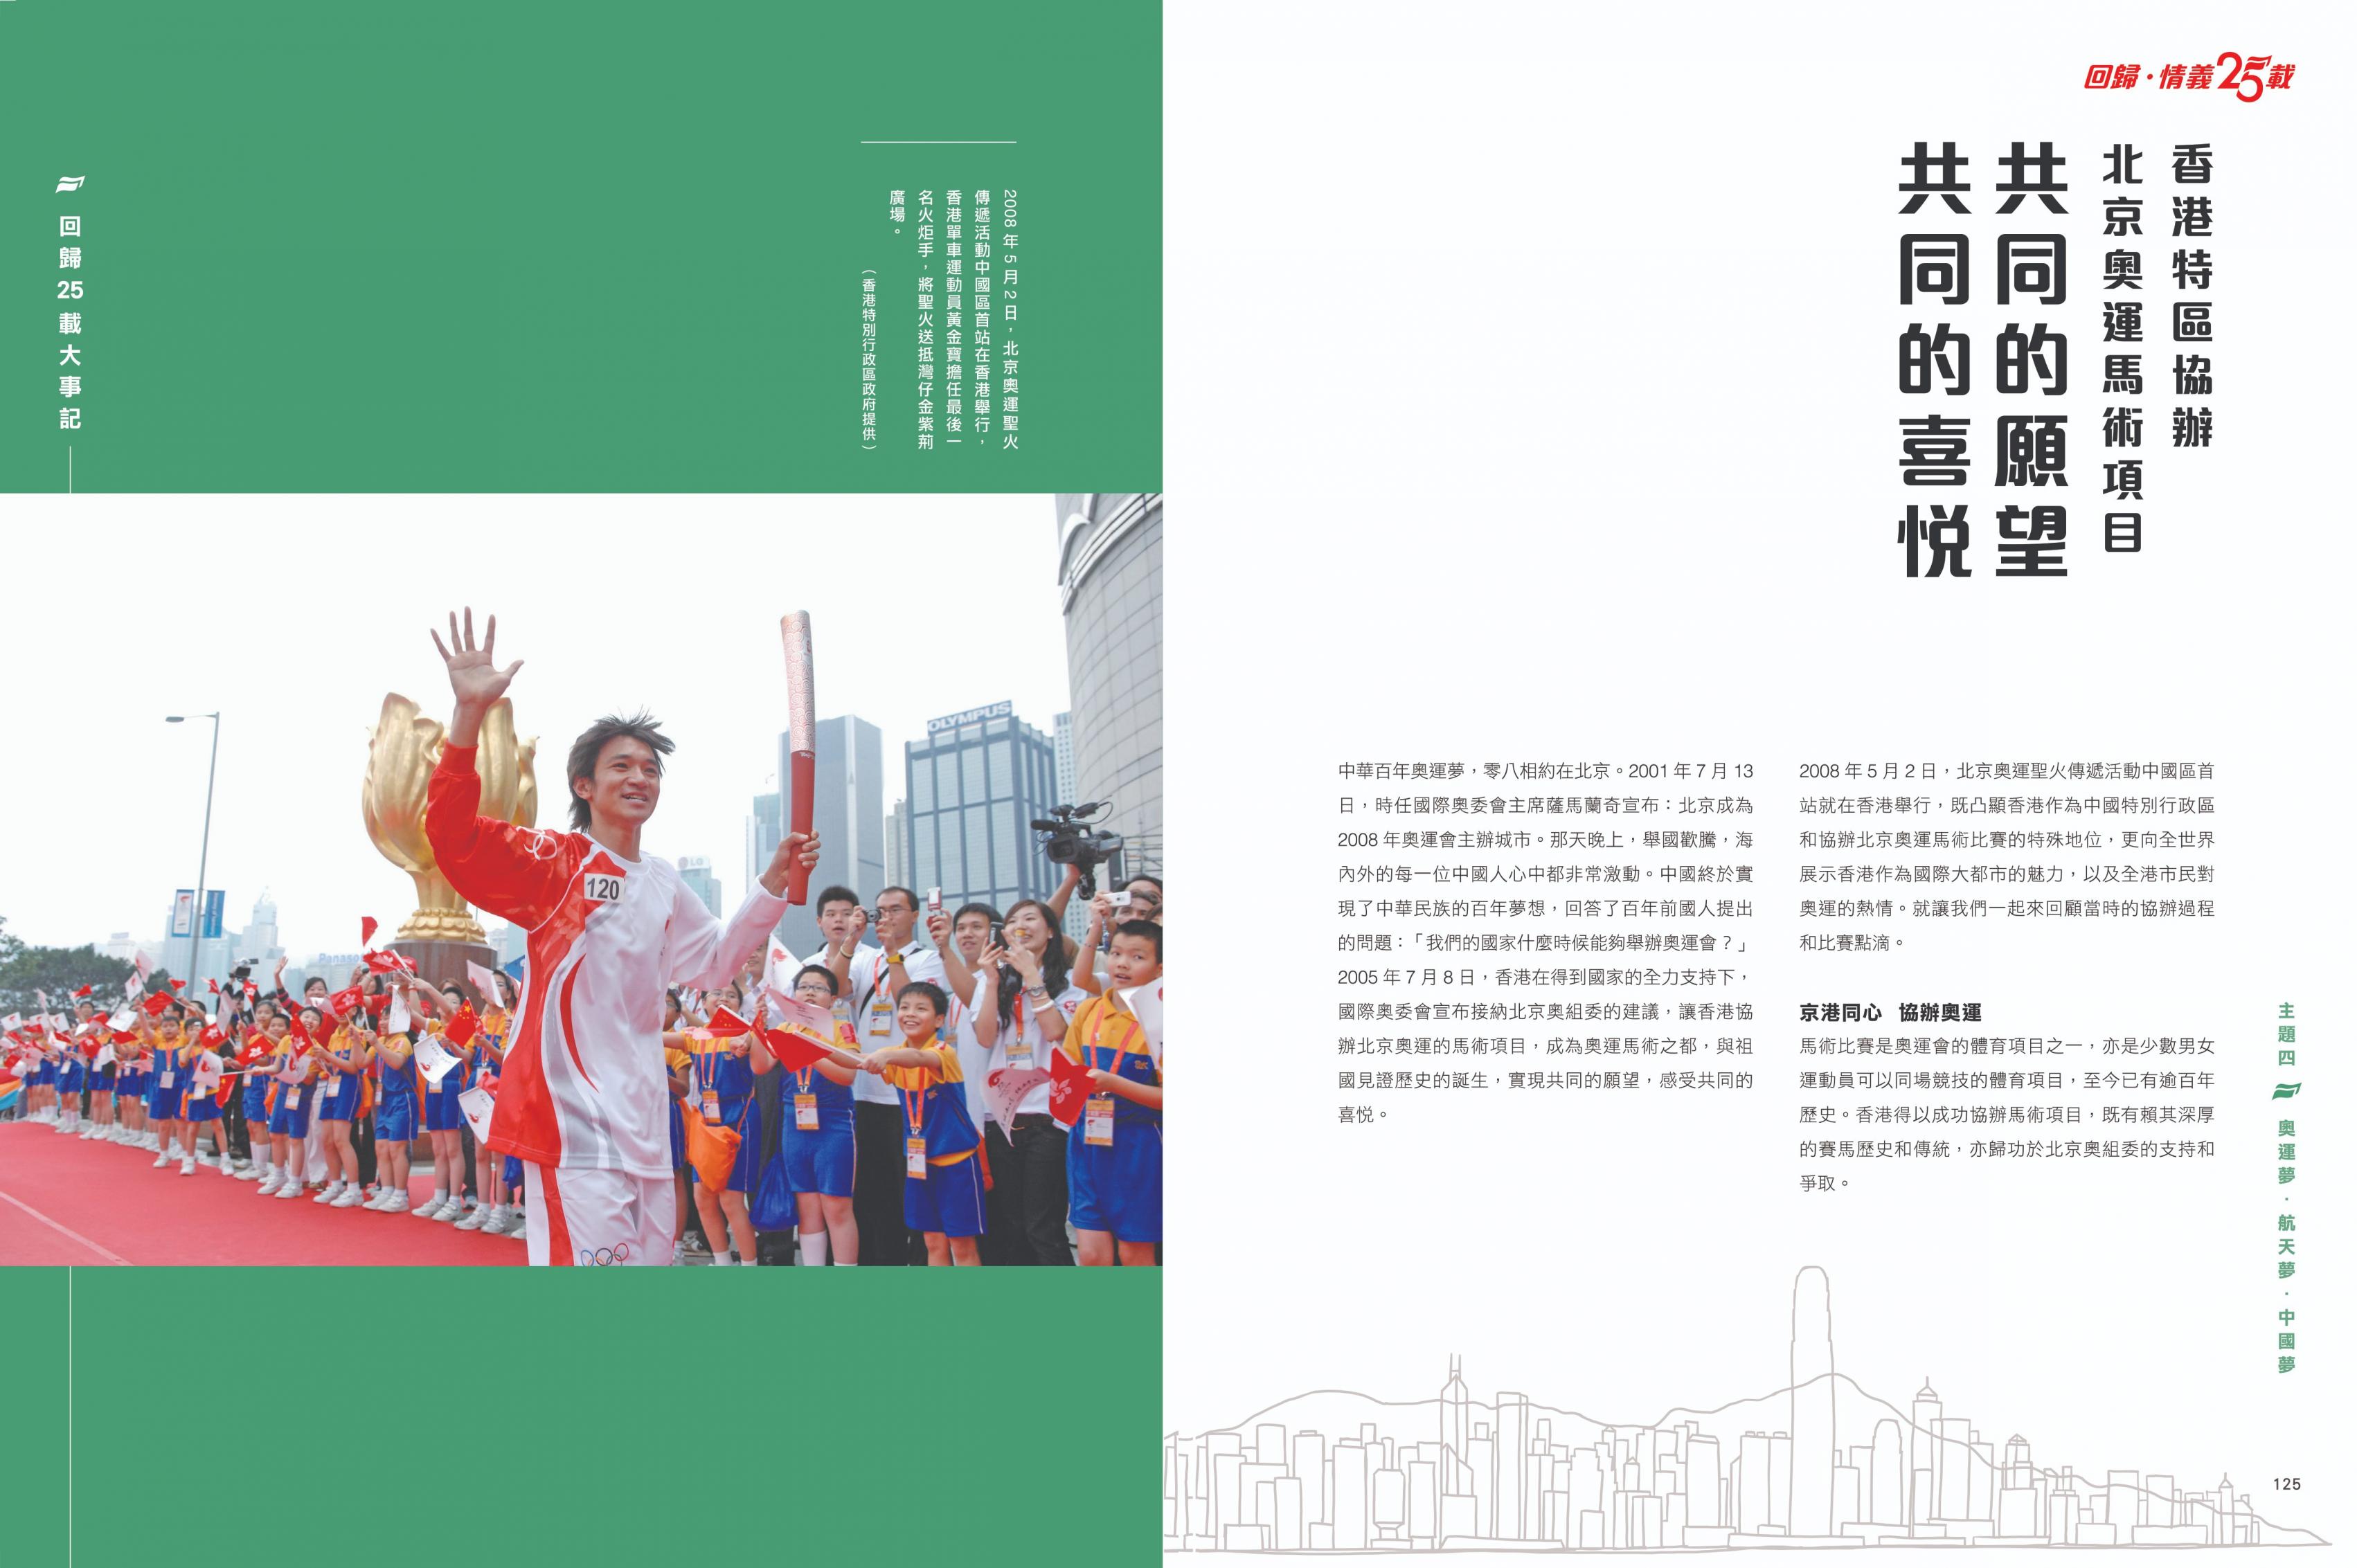 書中有記述2008年5月北京奧運聖火傳遞活動中國區首站在香港舉行的內容。